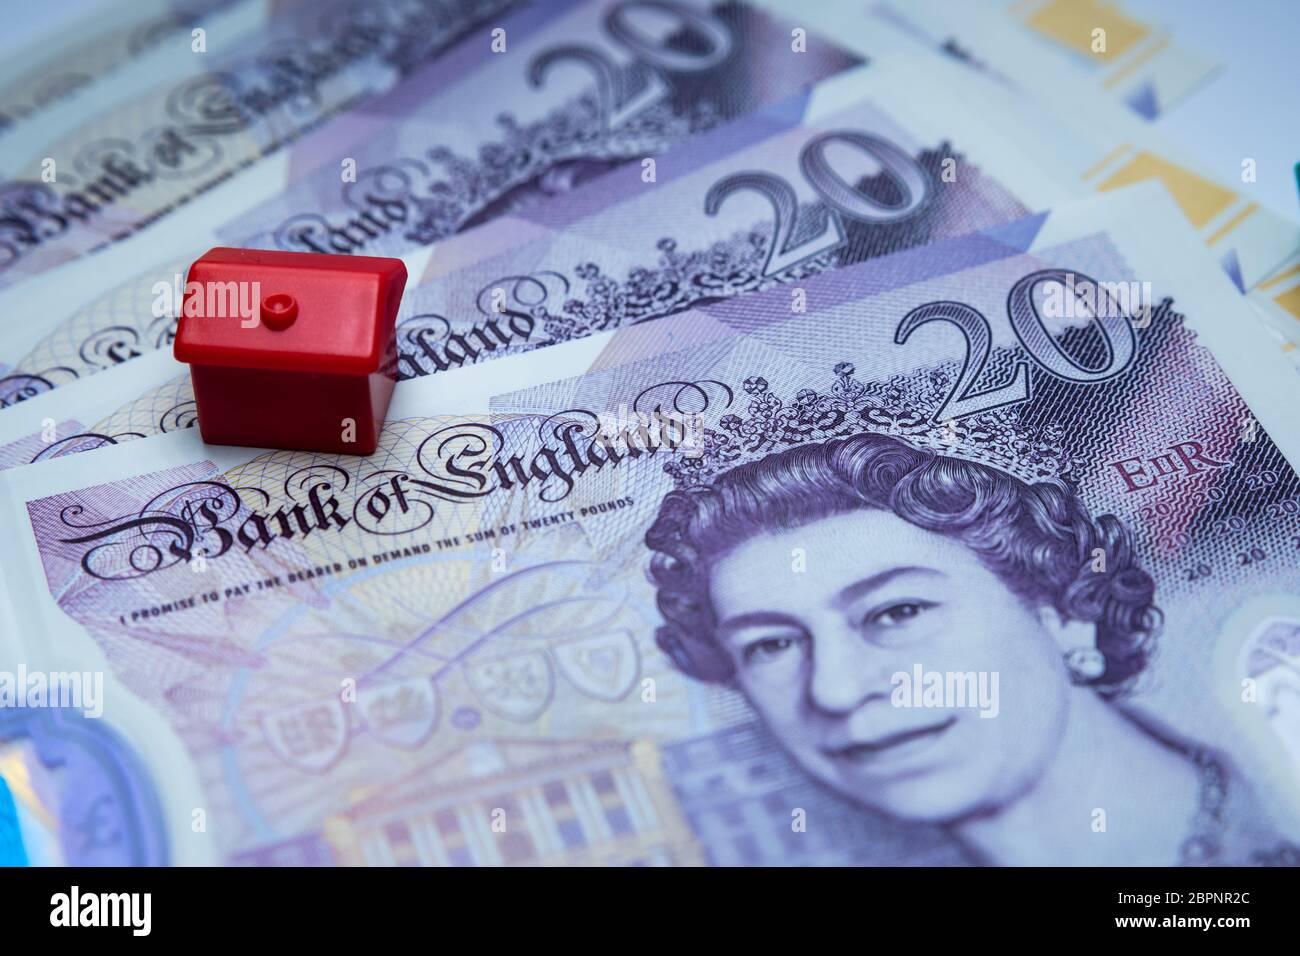 La casa giocattolo rossa si è posta sopra 20 banconote inglesi. Foto macro. Immagine concettuale per UK House Price Index, First home, ipoteca, immobiliare o h. Foto Stock